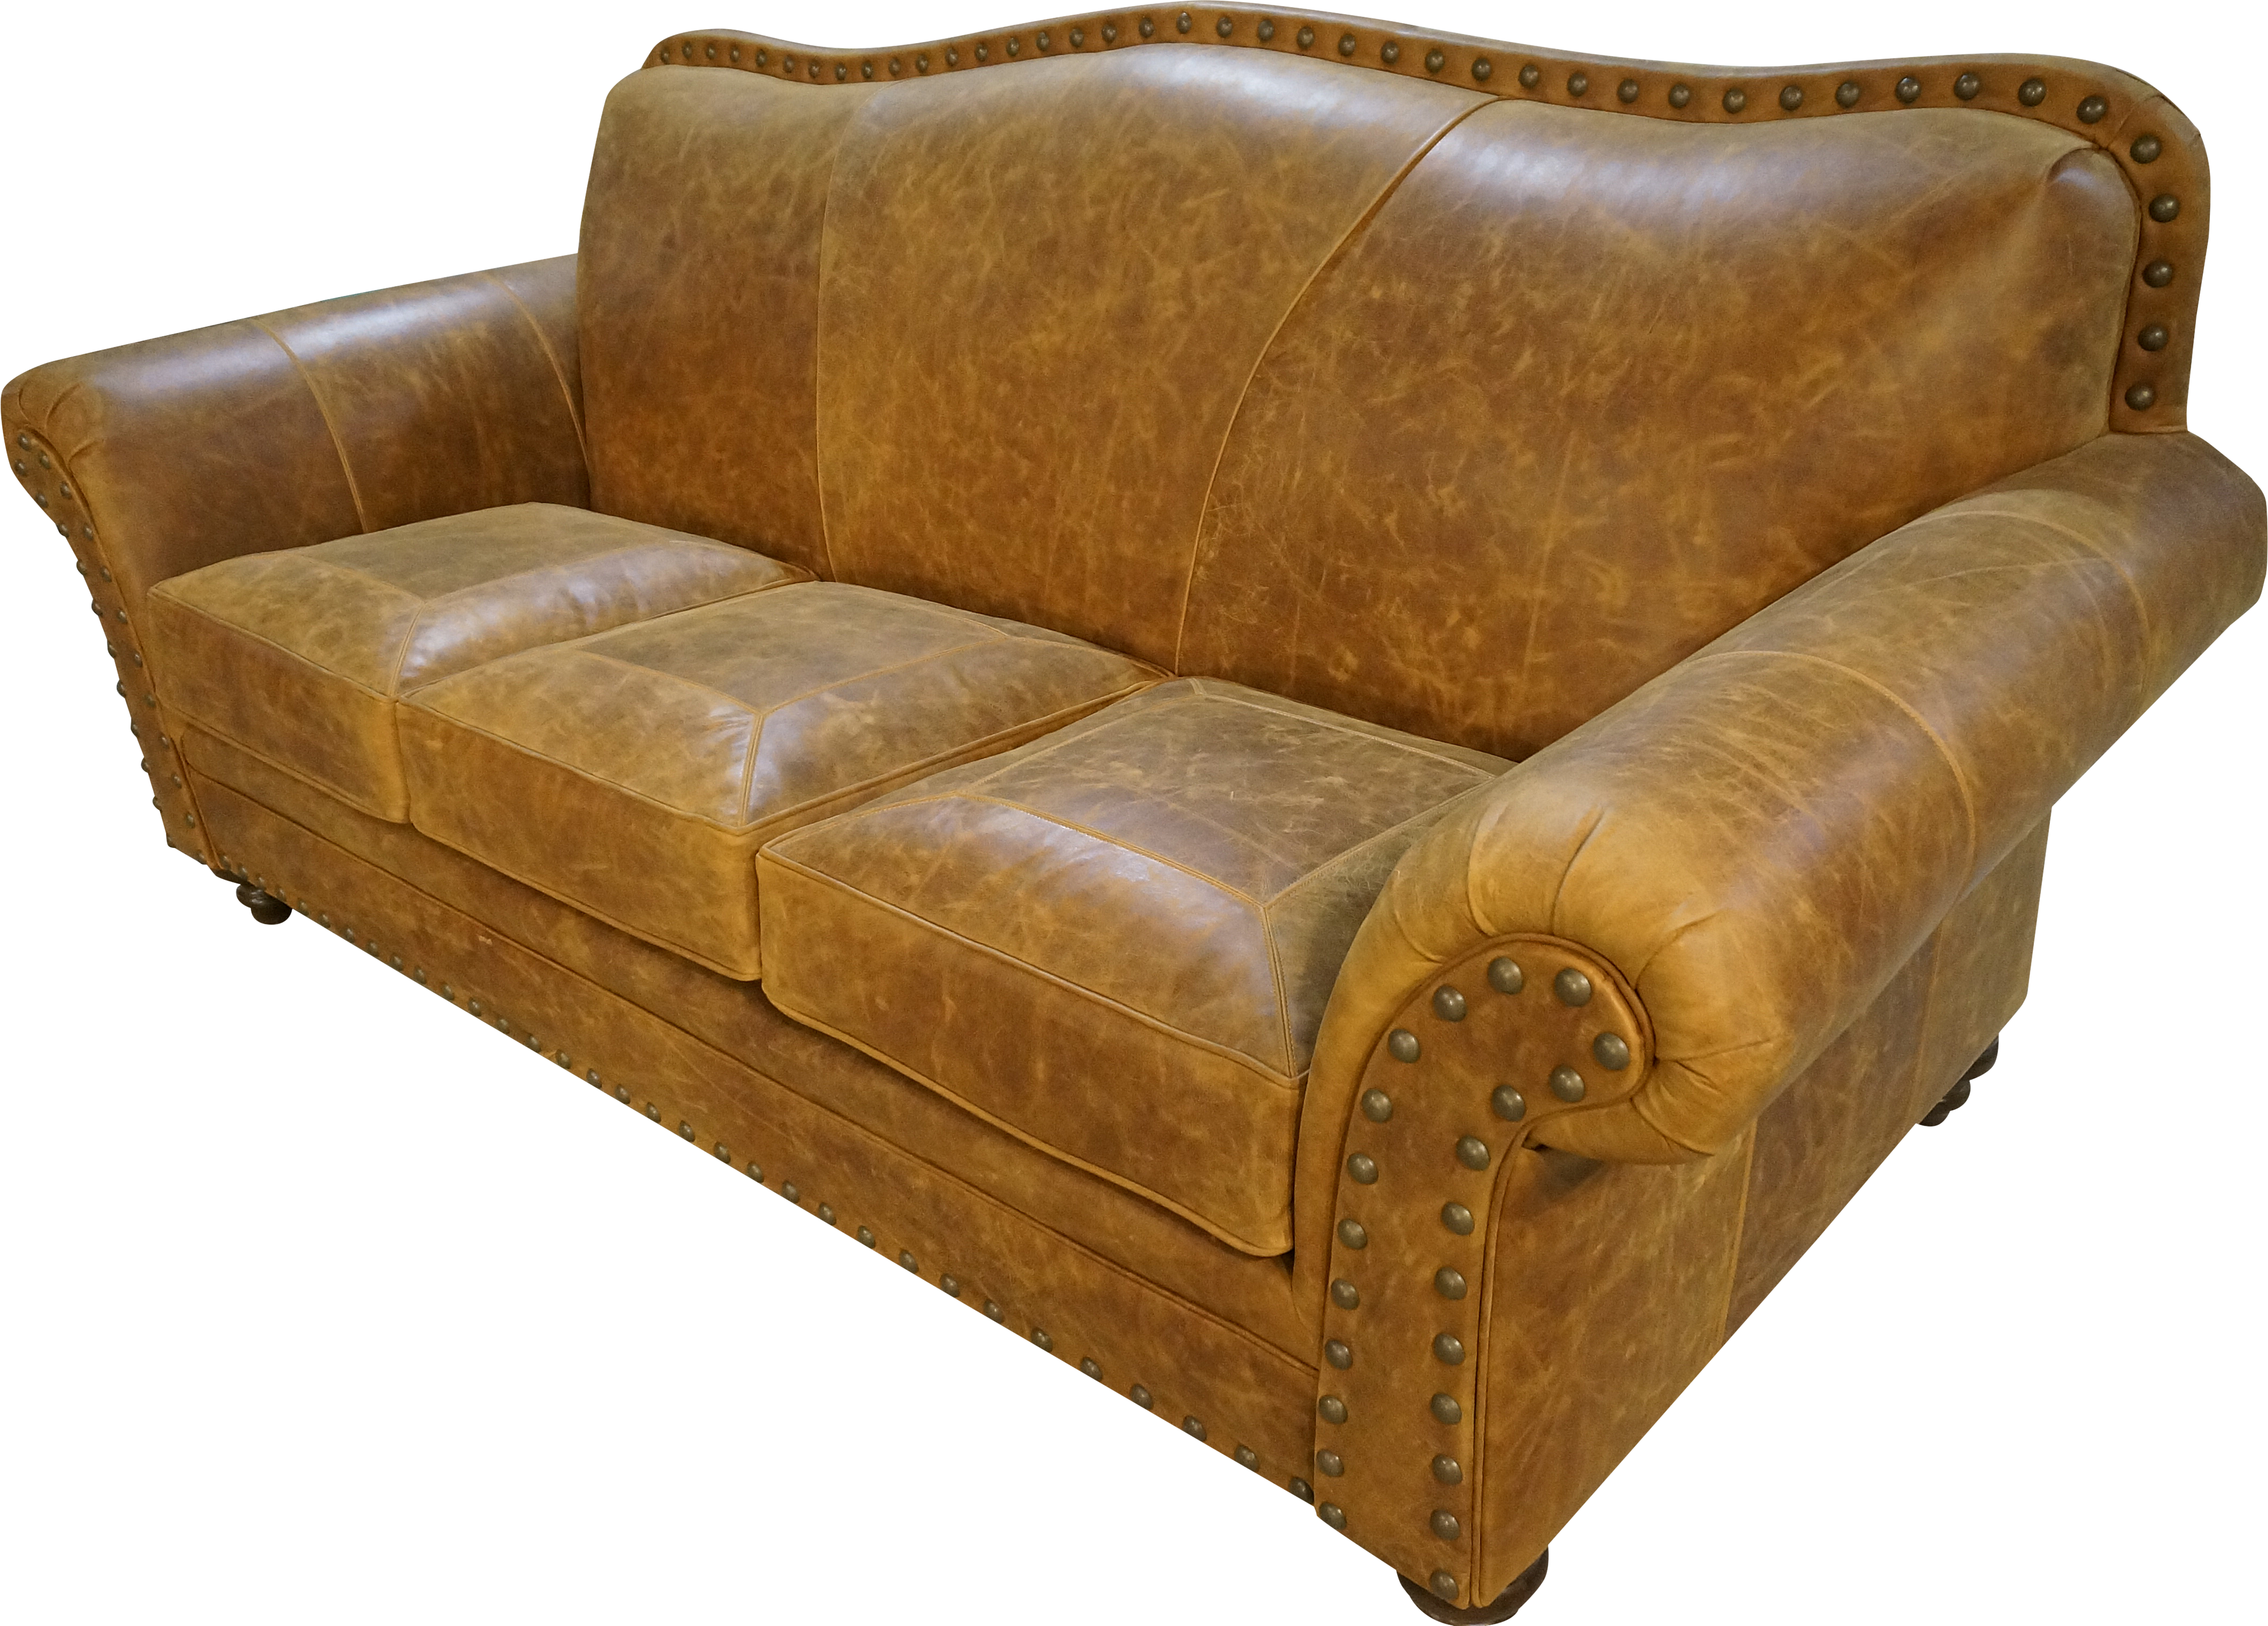 Longhorn 3 Cushion Sofa